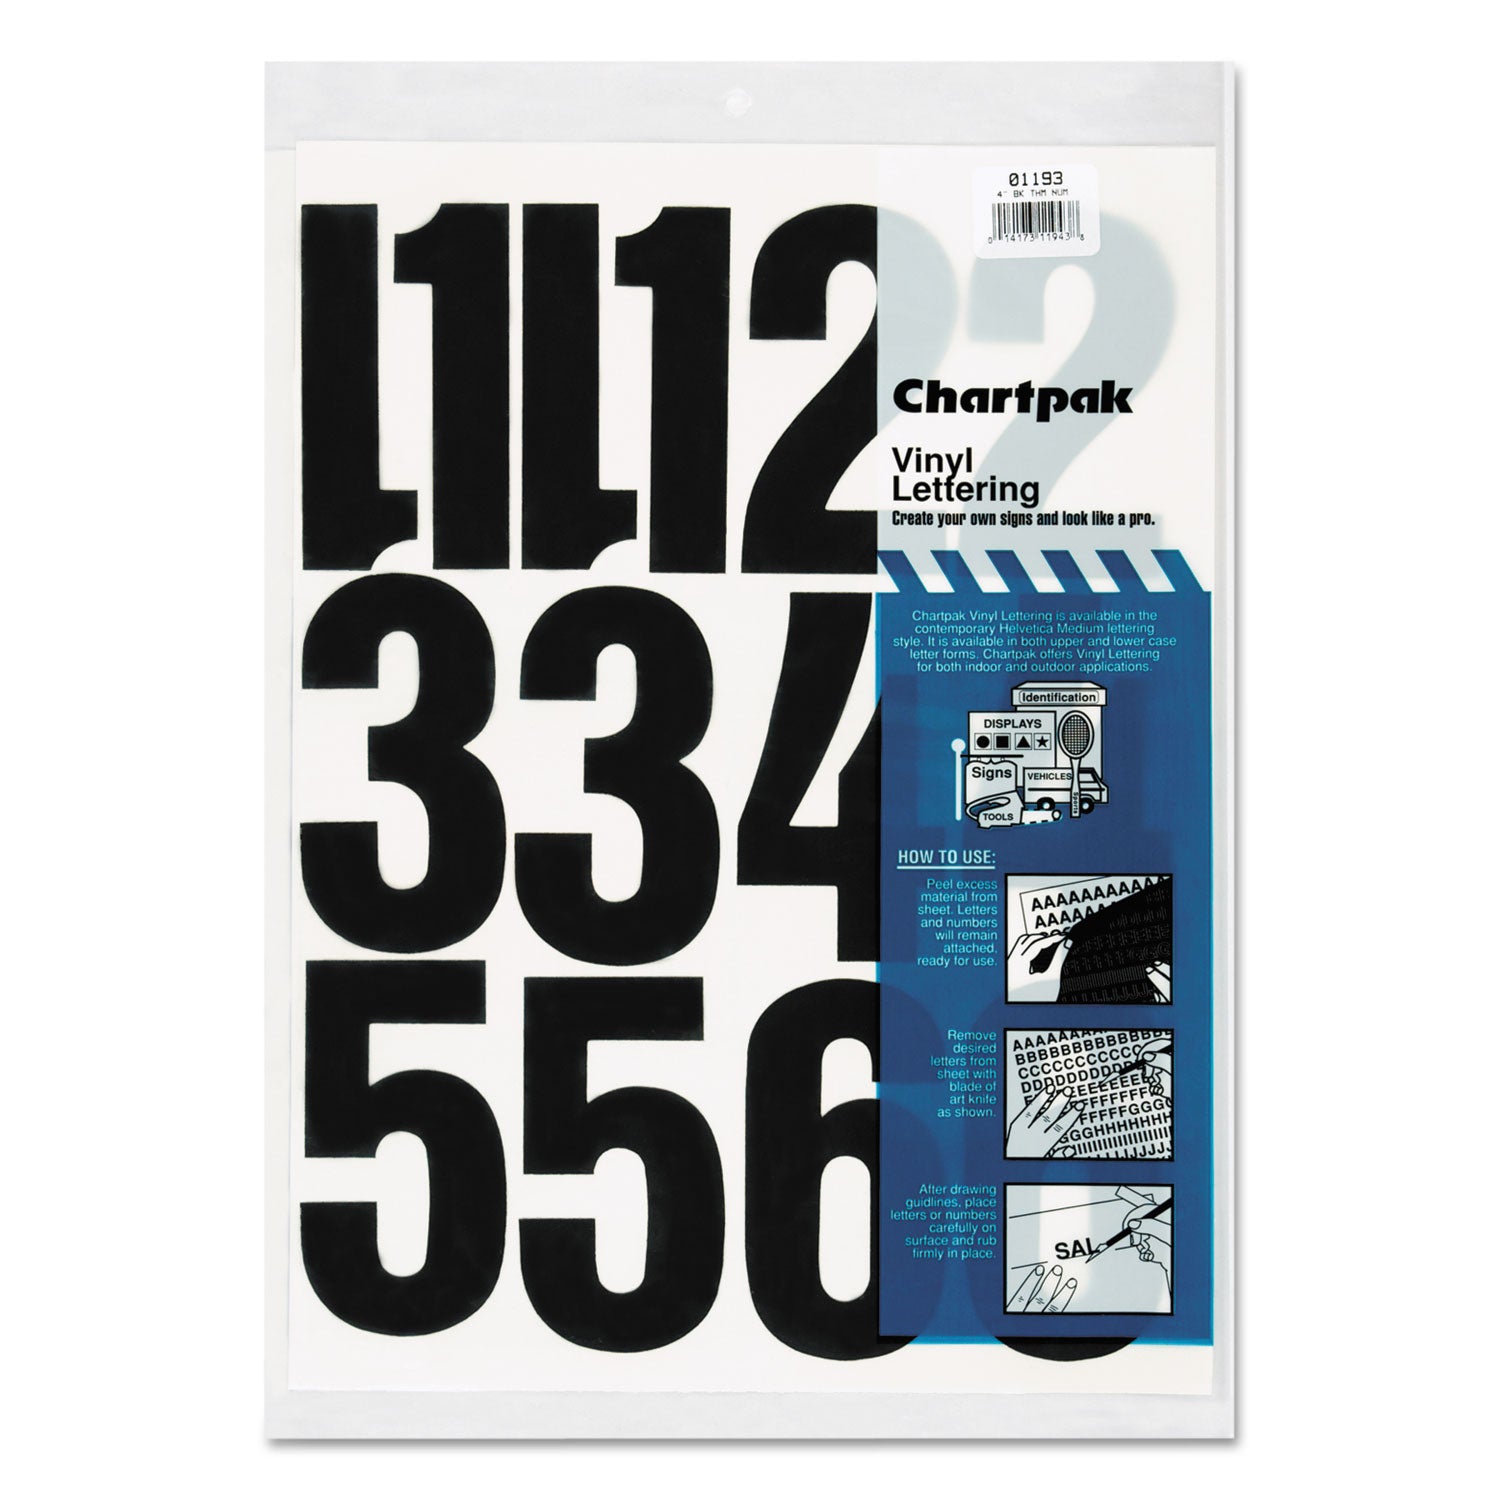 Press-On Vinyl Numbers, Self Adhesive, Black, 4"h, 23/Pack - 